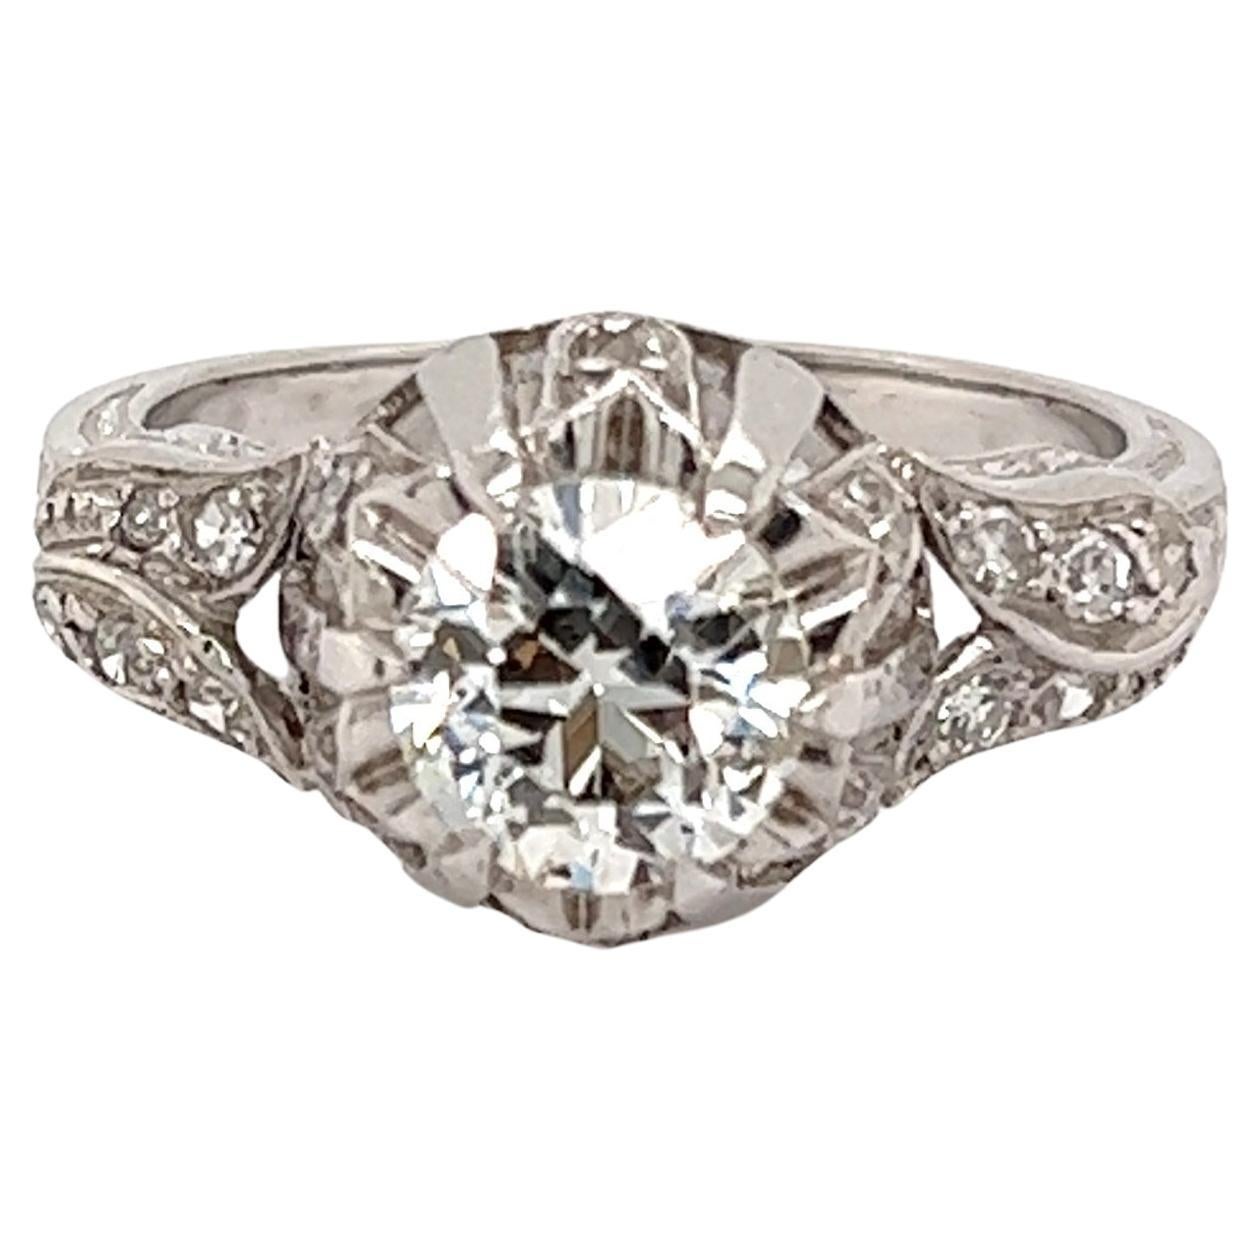 1.12 Carat GIA Diamond Solitaire Art Deco Platinum Ring Estate Fine Jewelry